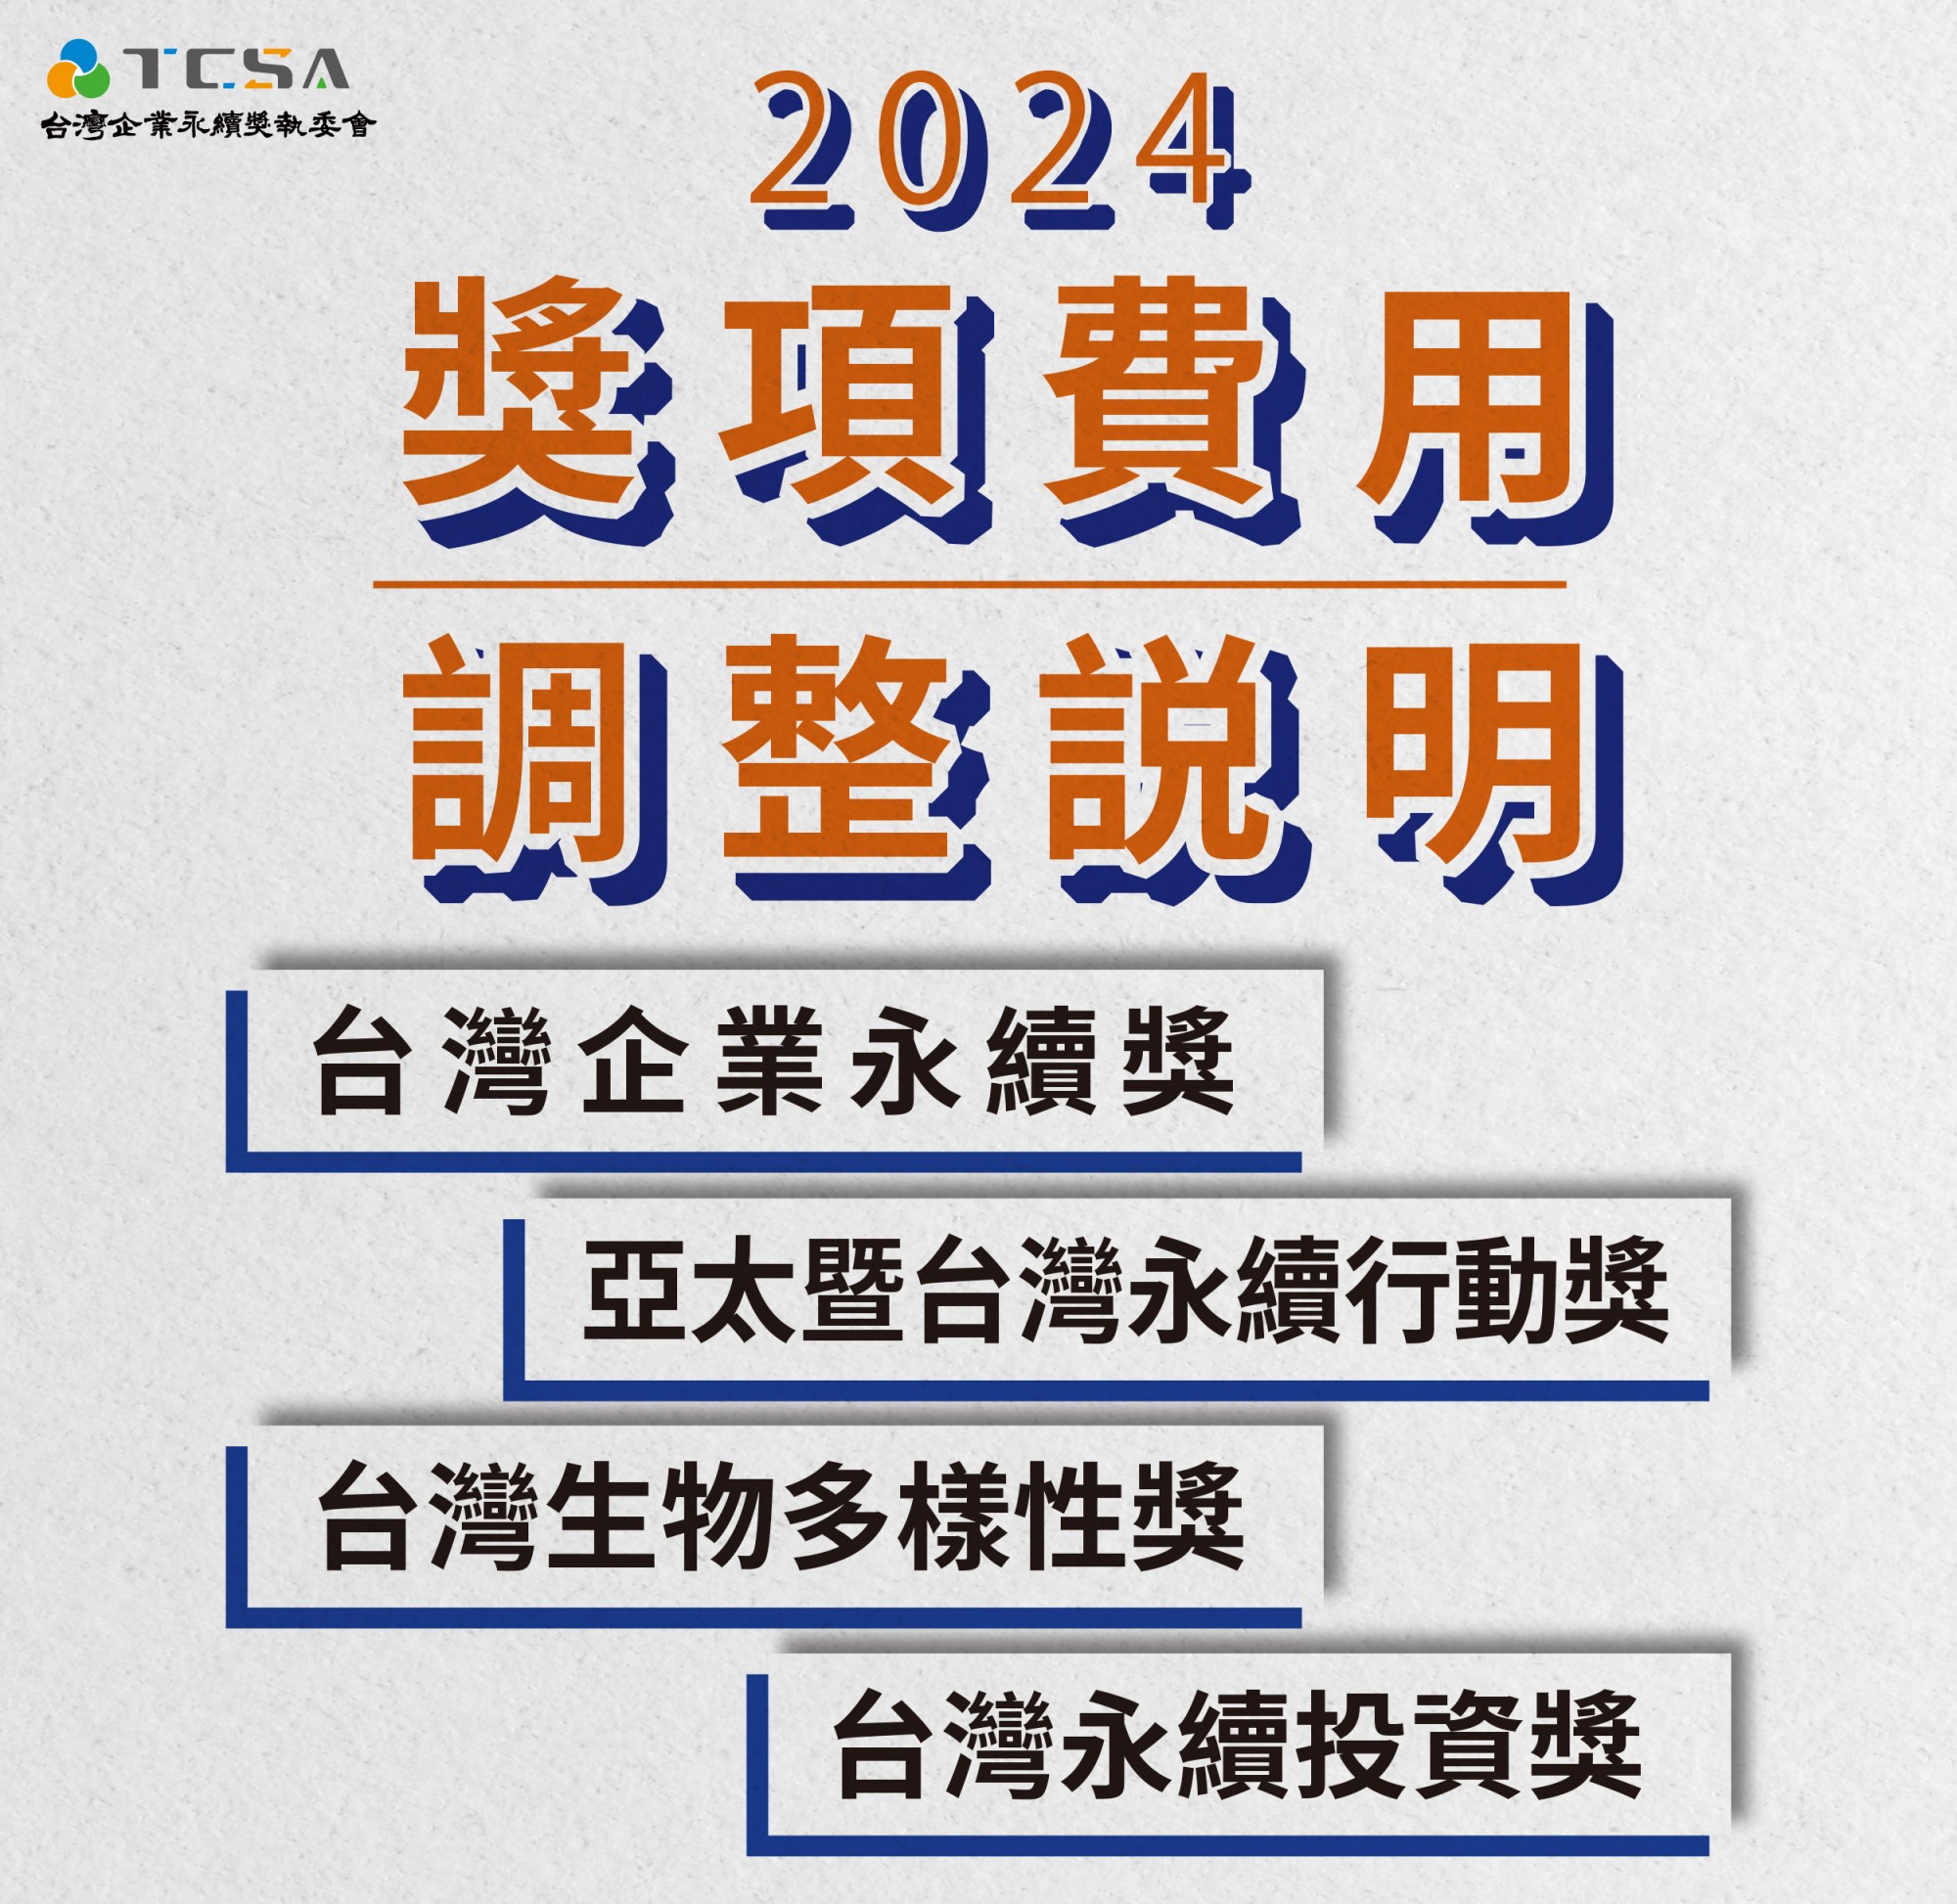 2024年TCSA各獎項參獎費用調整公告